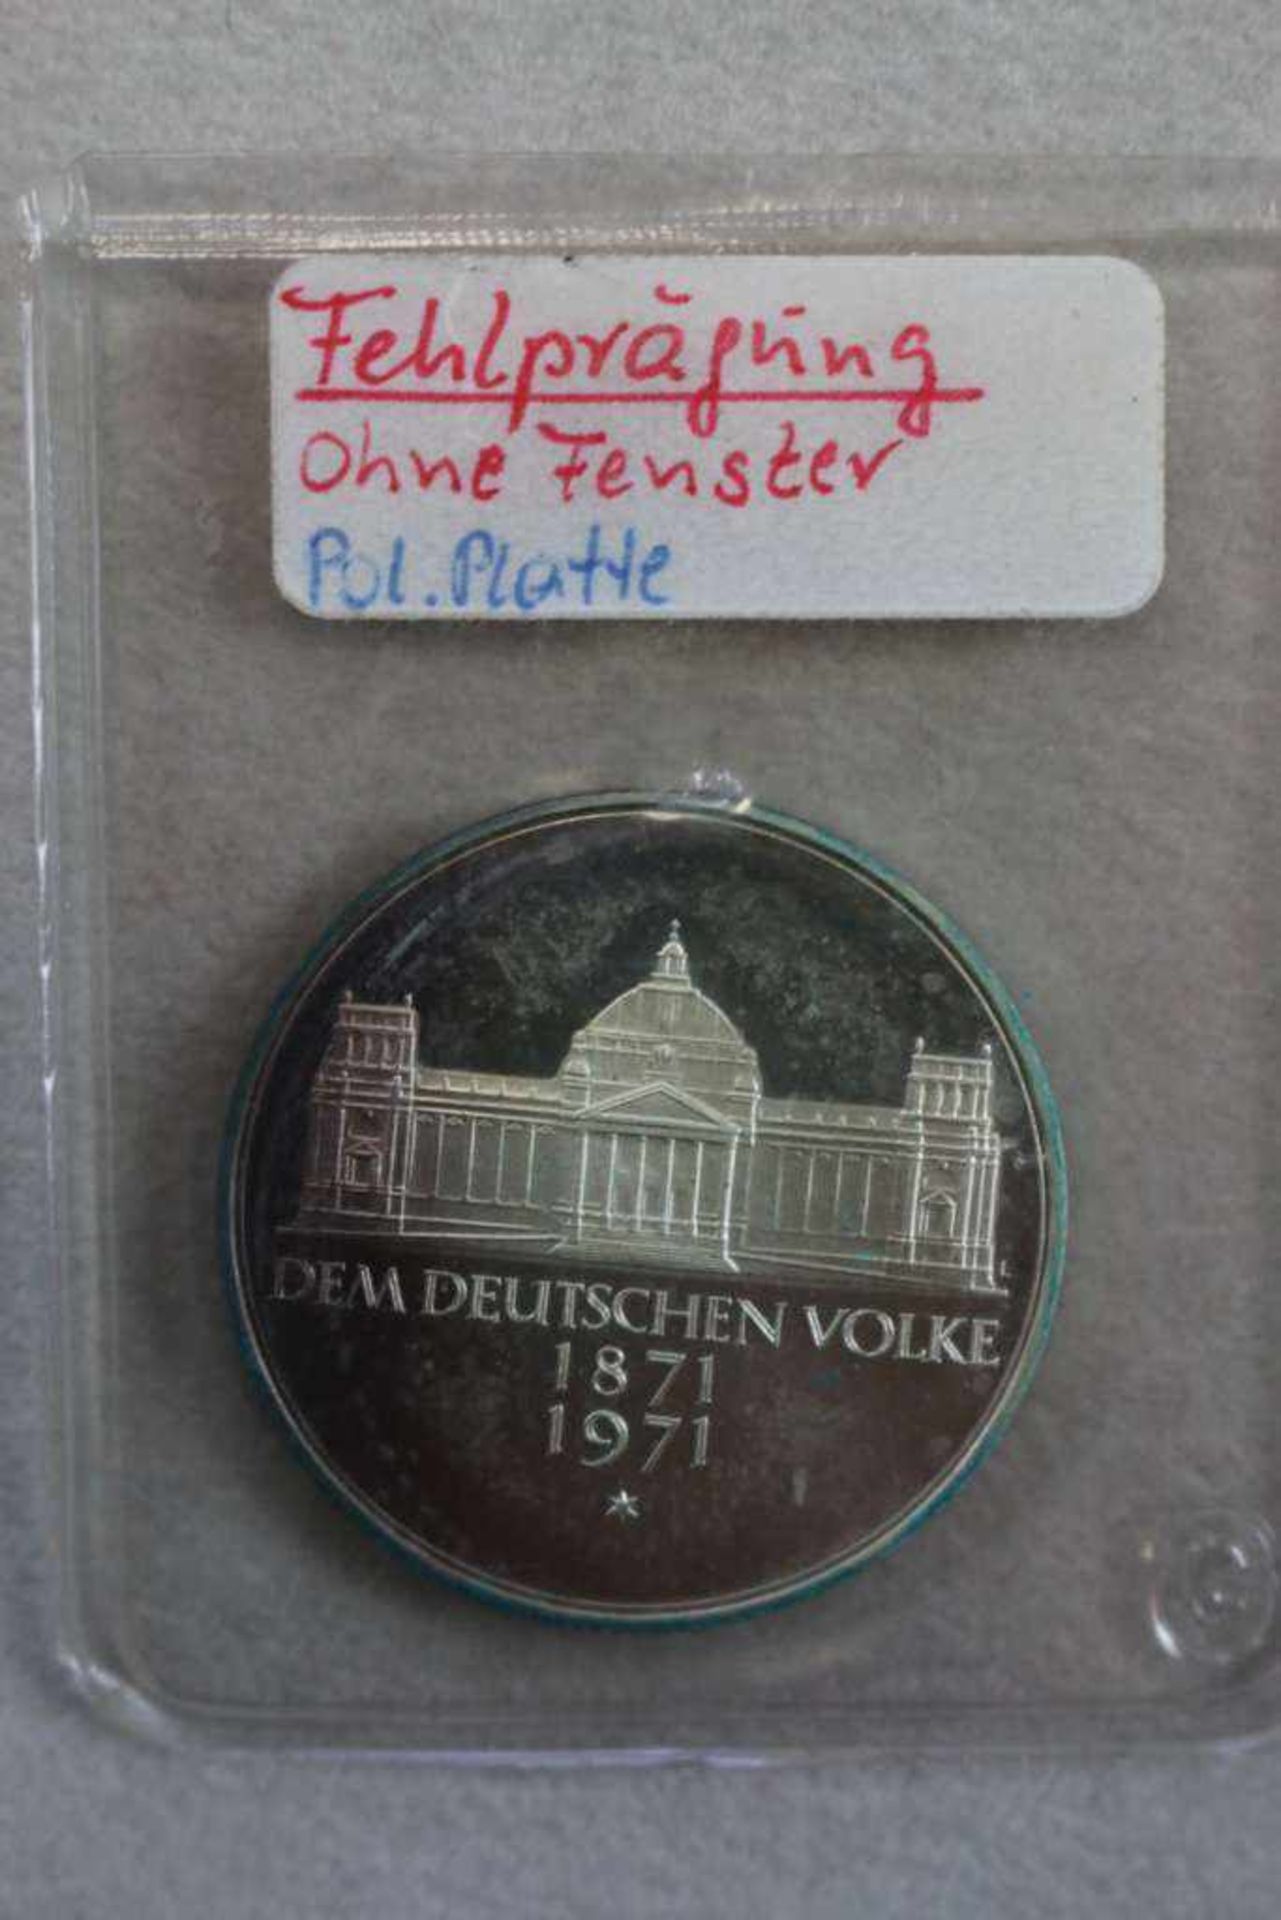 Fehlprägugung 5 DM 1971 Gedenkmünze zur Reichsgründung 1871, Ausführung ohne Fenster, polierte